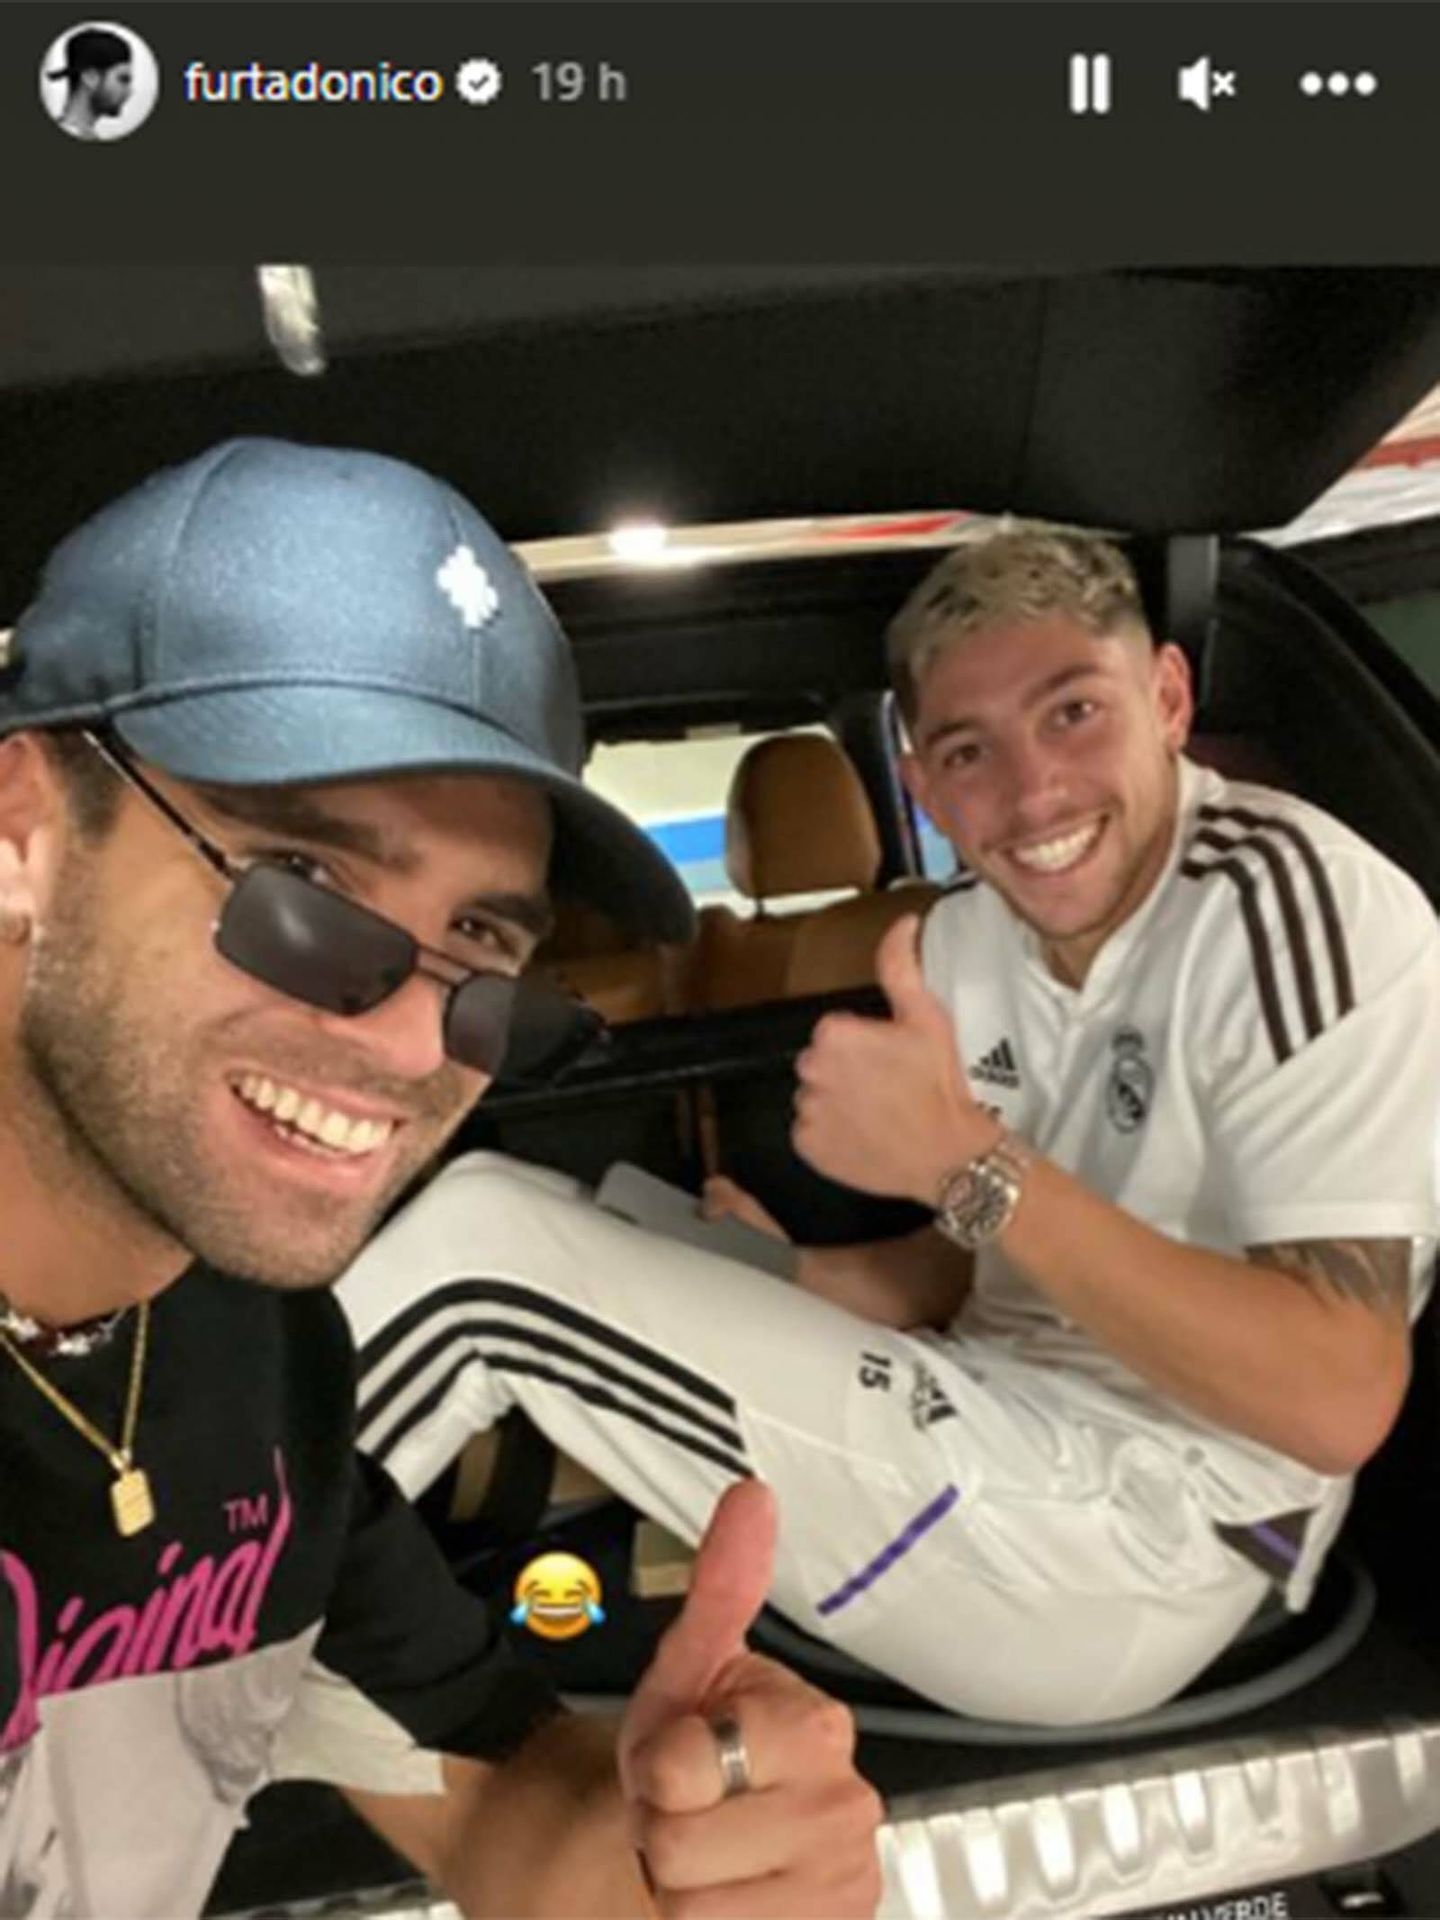 Fede Valverde y Nico Furtado celebran la victoria del Real Madrid. (Instagram/@furtadonico)